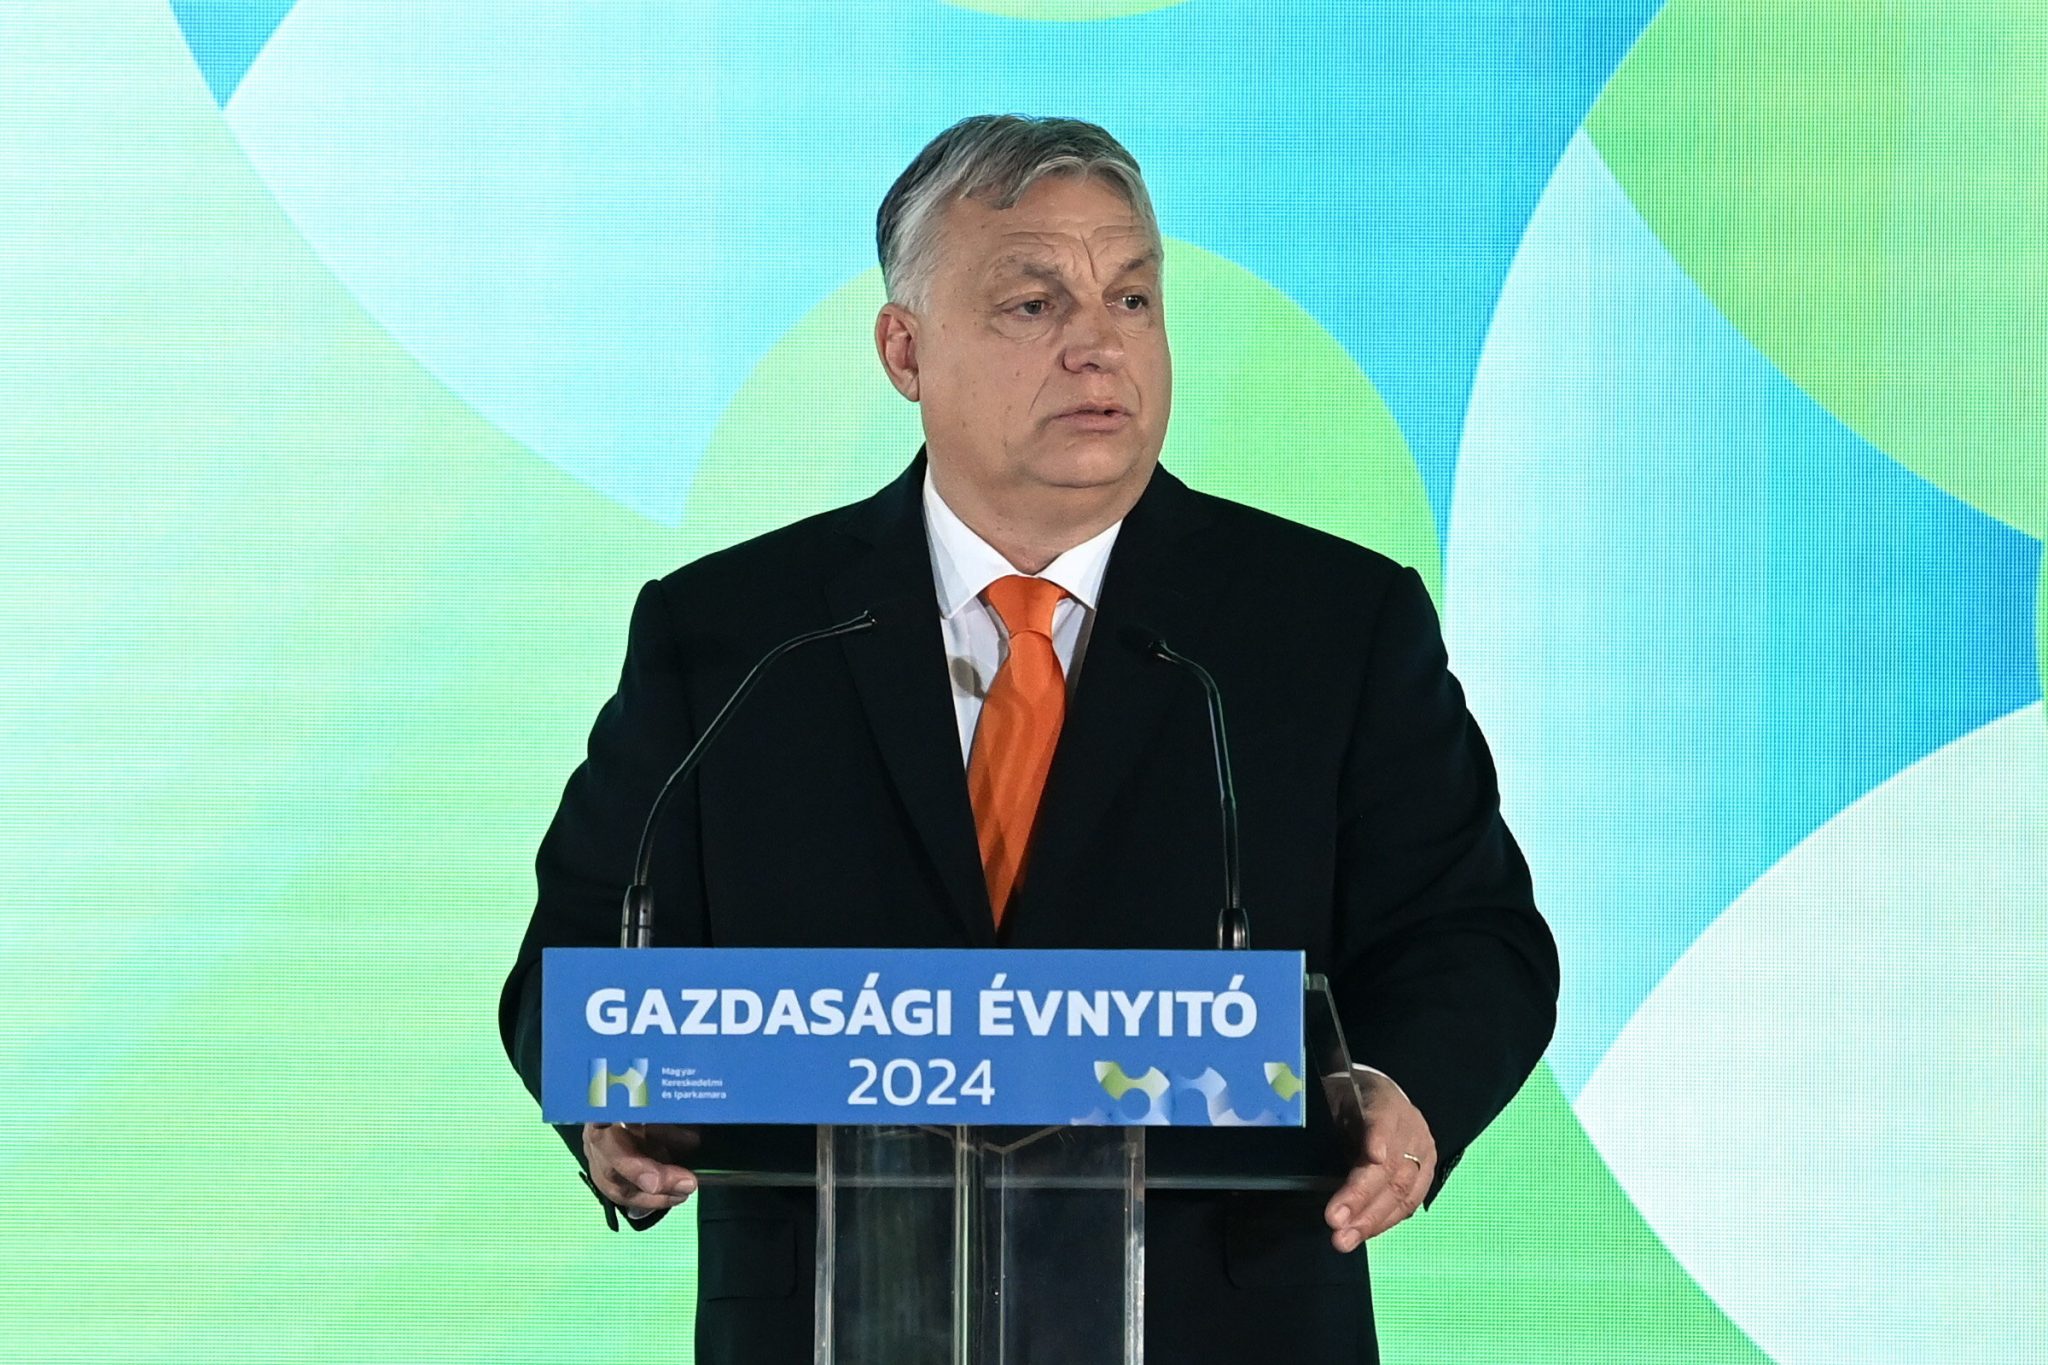 Regierungschef gibt optimistischen Ausblick auf Ungarns Wirtschaftspolitik der nächsten zwei Jahre